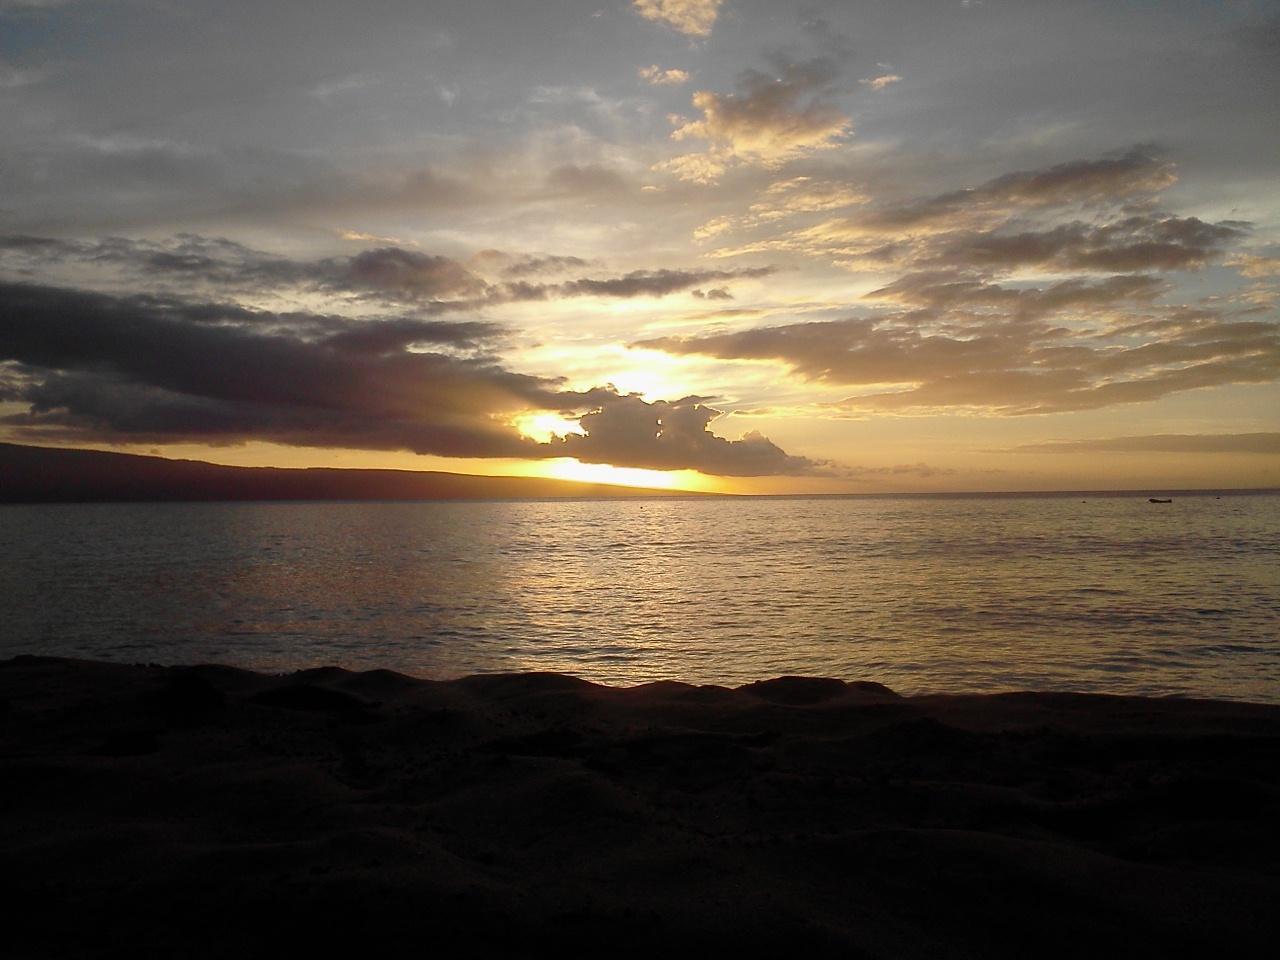 Sunset at Kaanapali - Maui